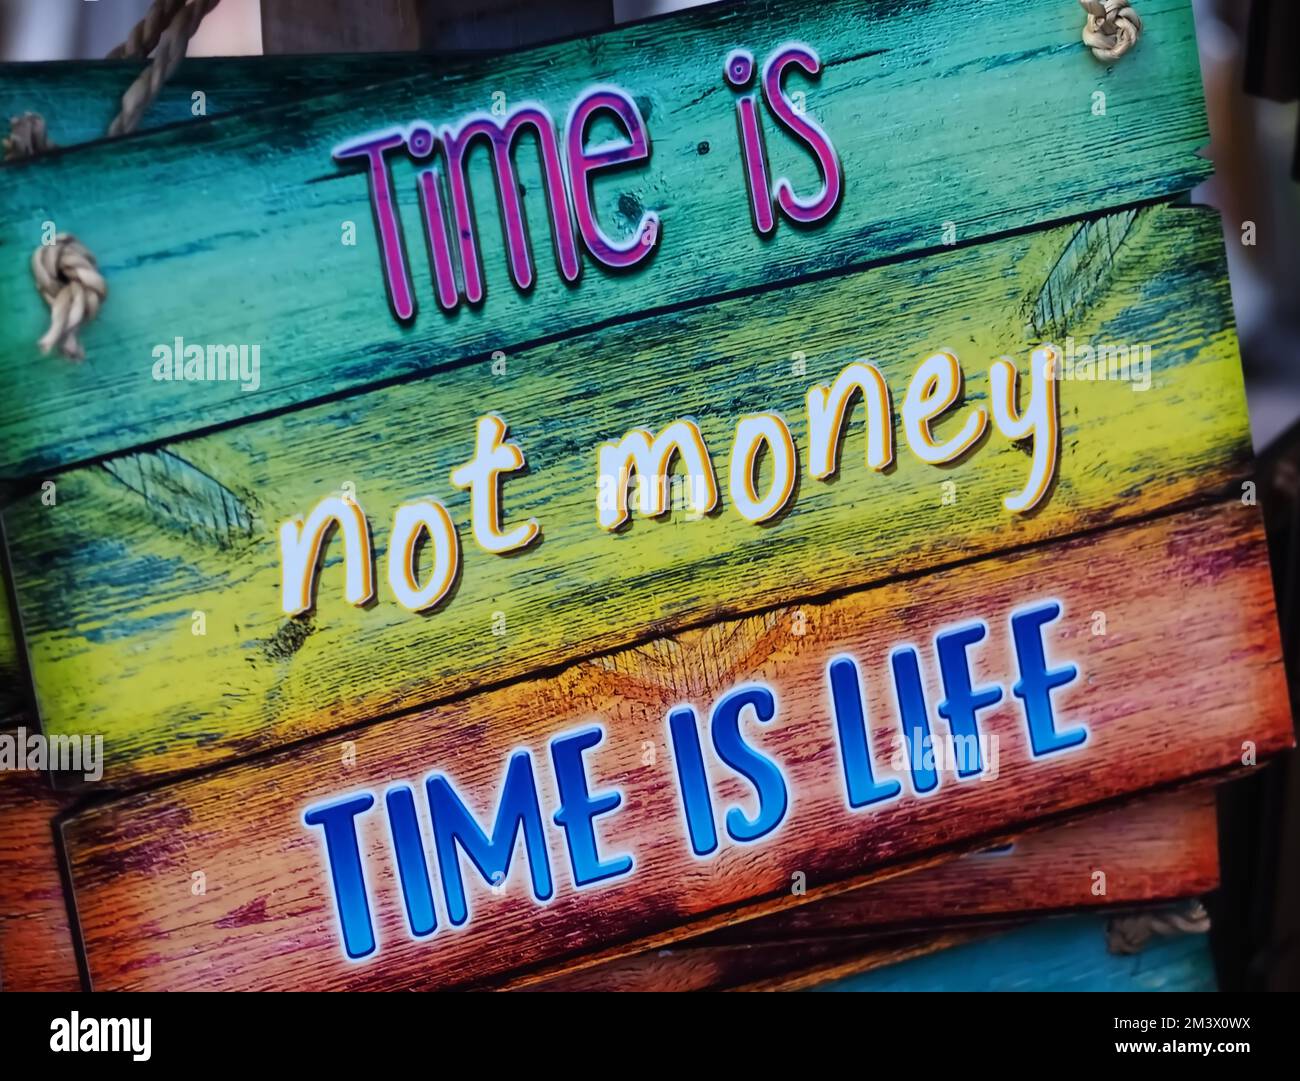 El tiempo colorido de la muestra de madera no es el dinero El tiempo es la vida Foto de stock